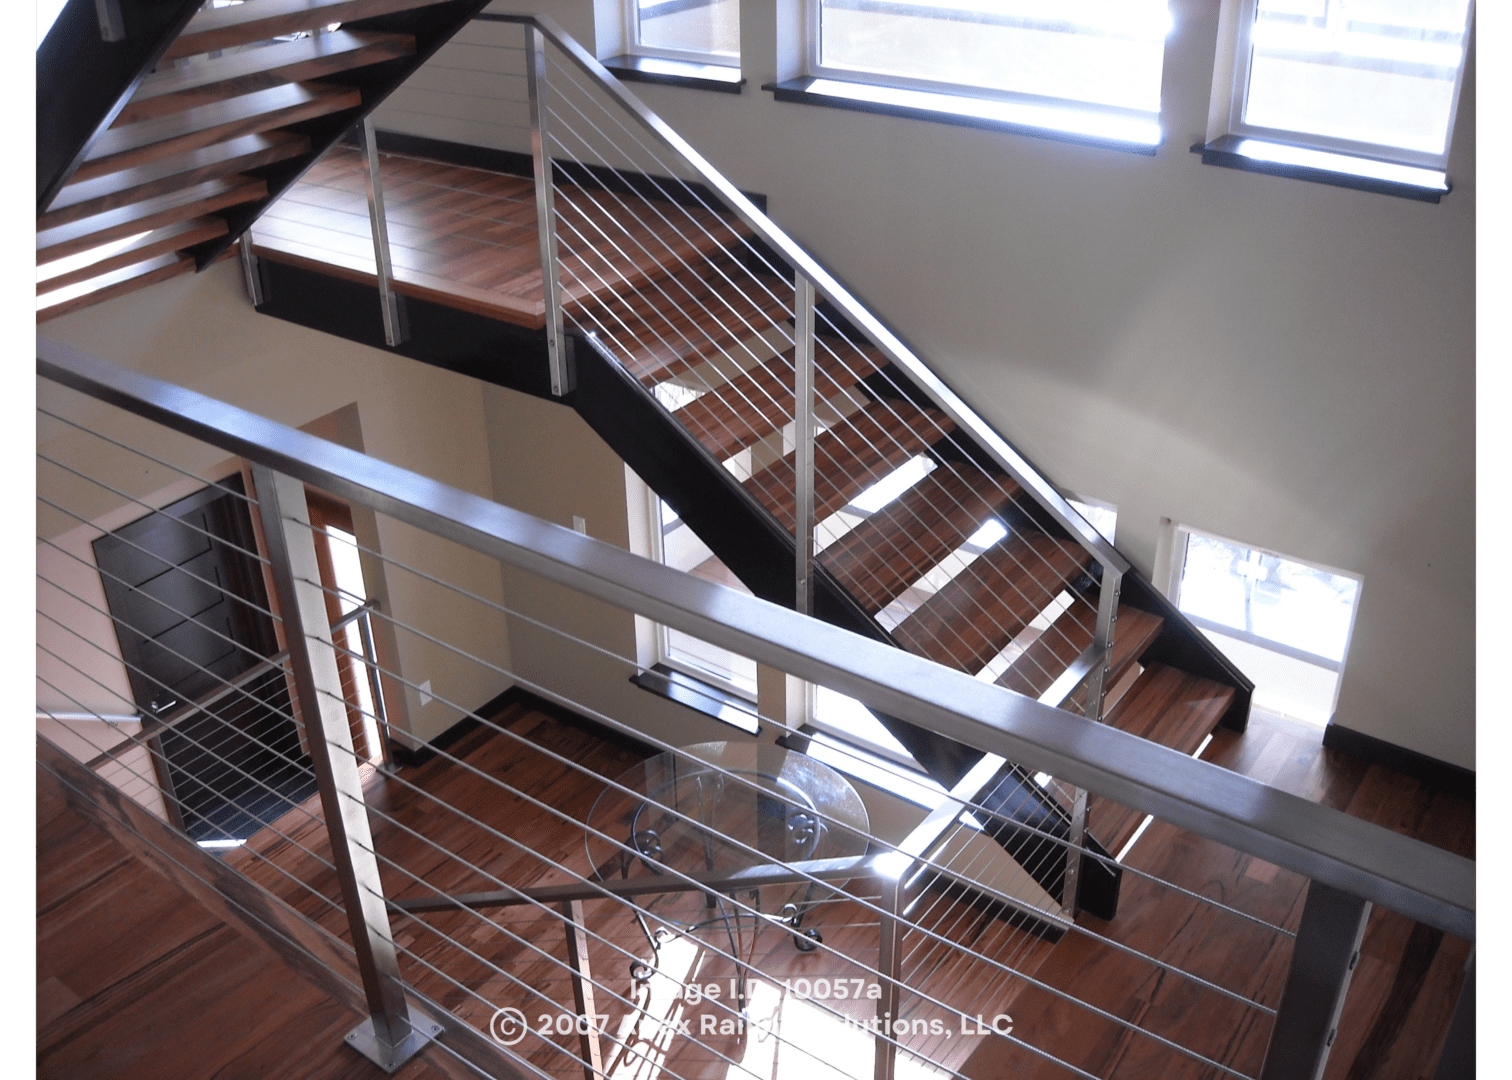 custom interior railings inside a home